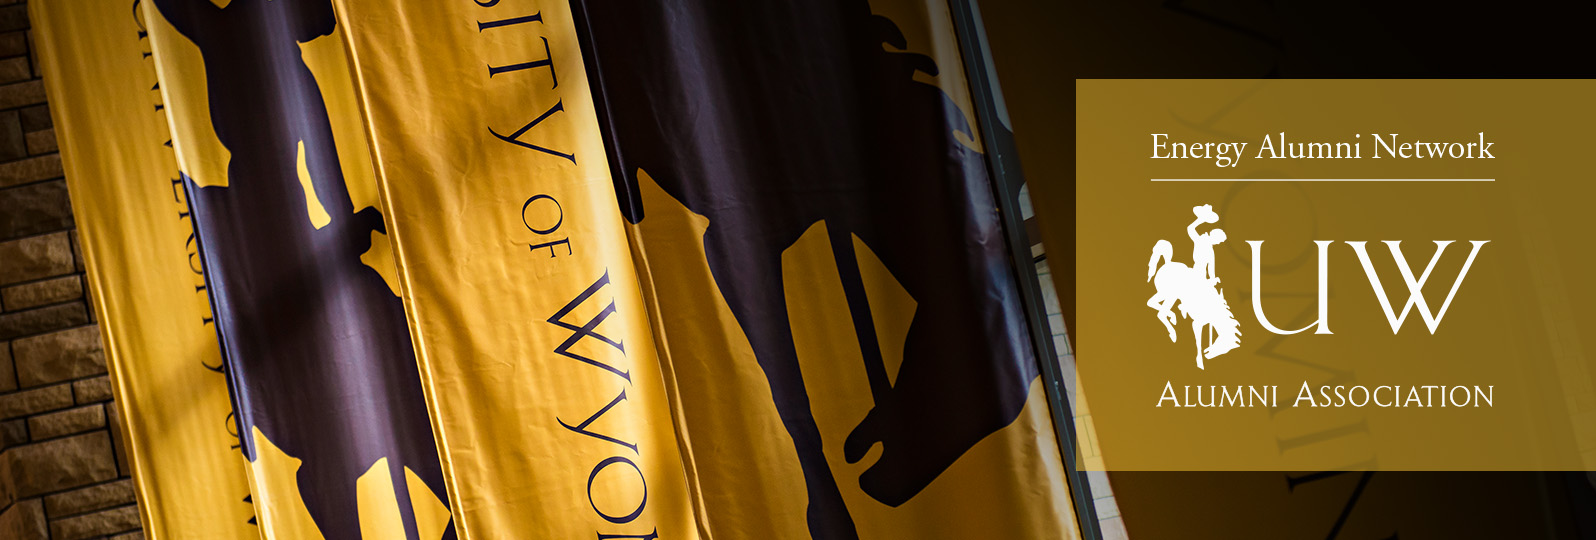 Energy Alumni Network logo over UW flags